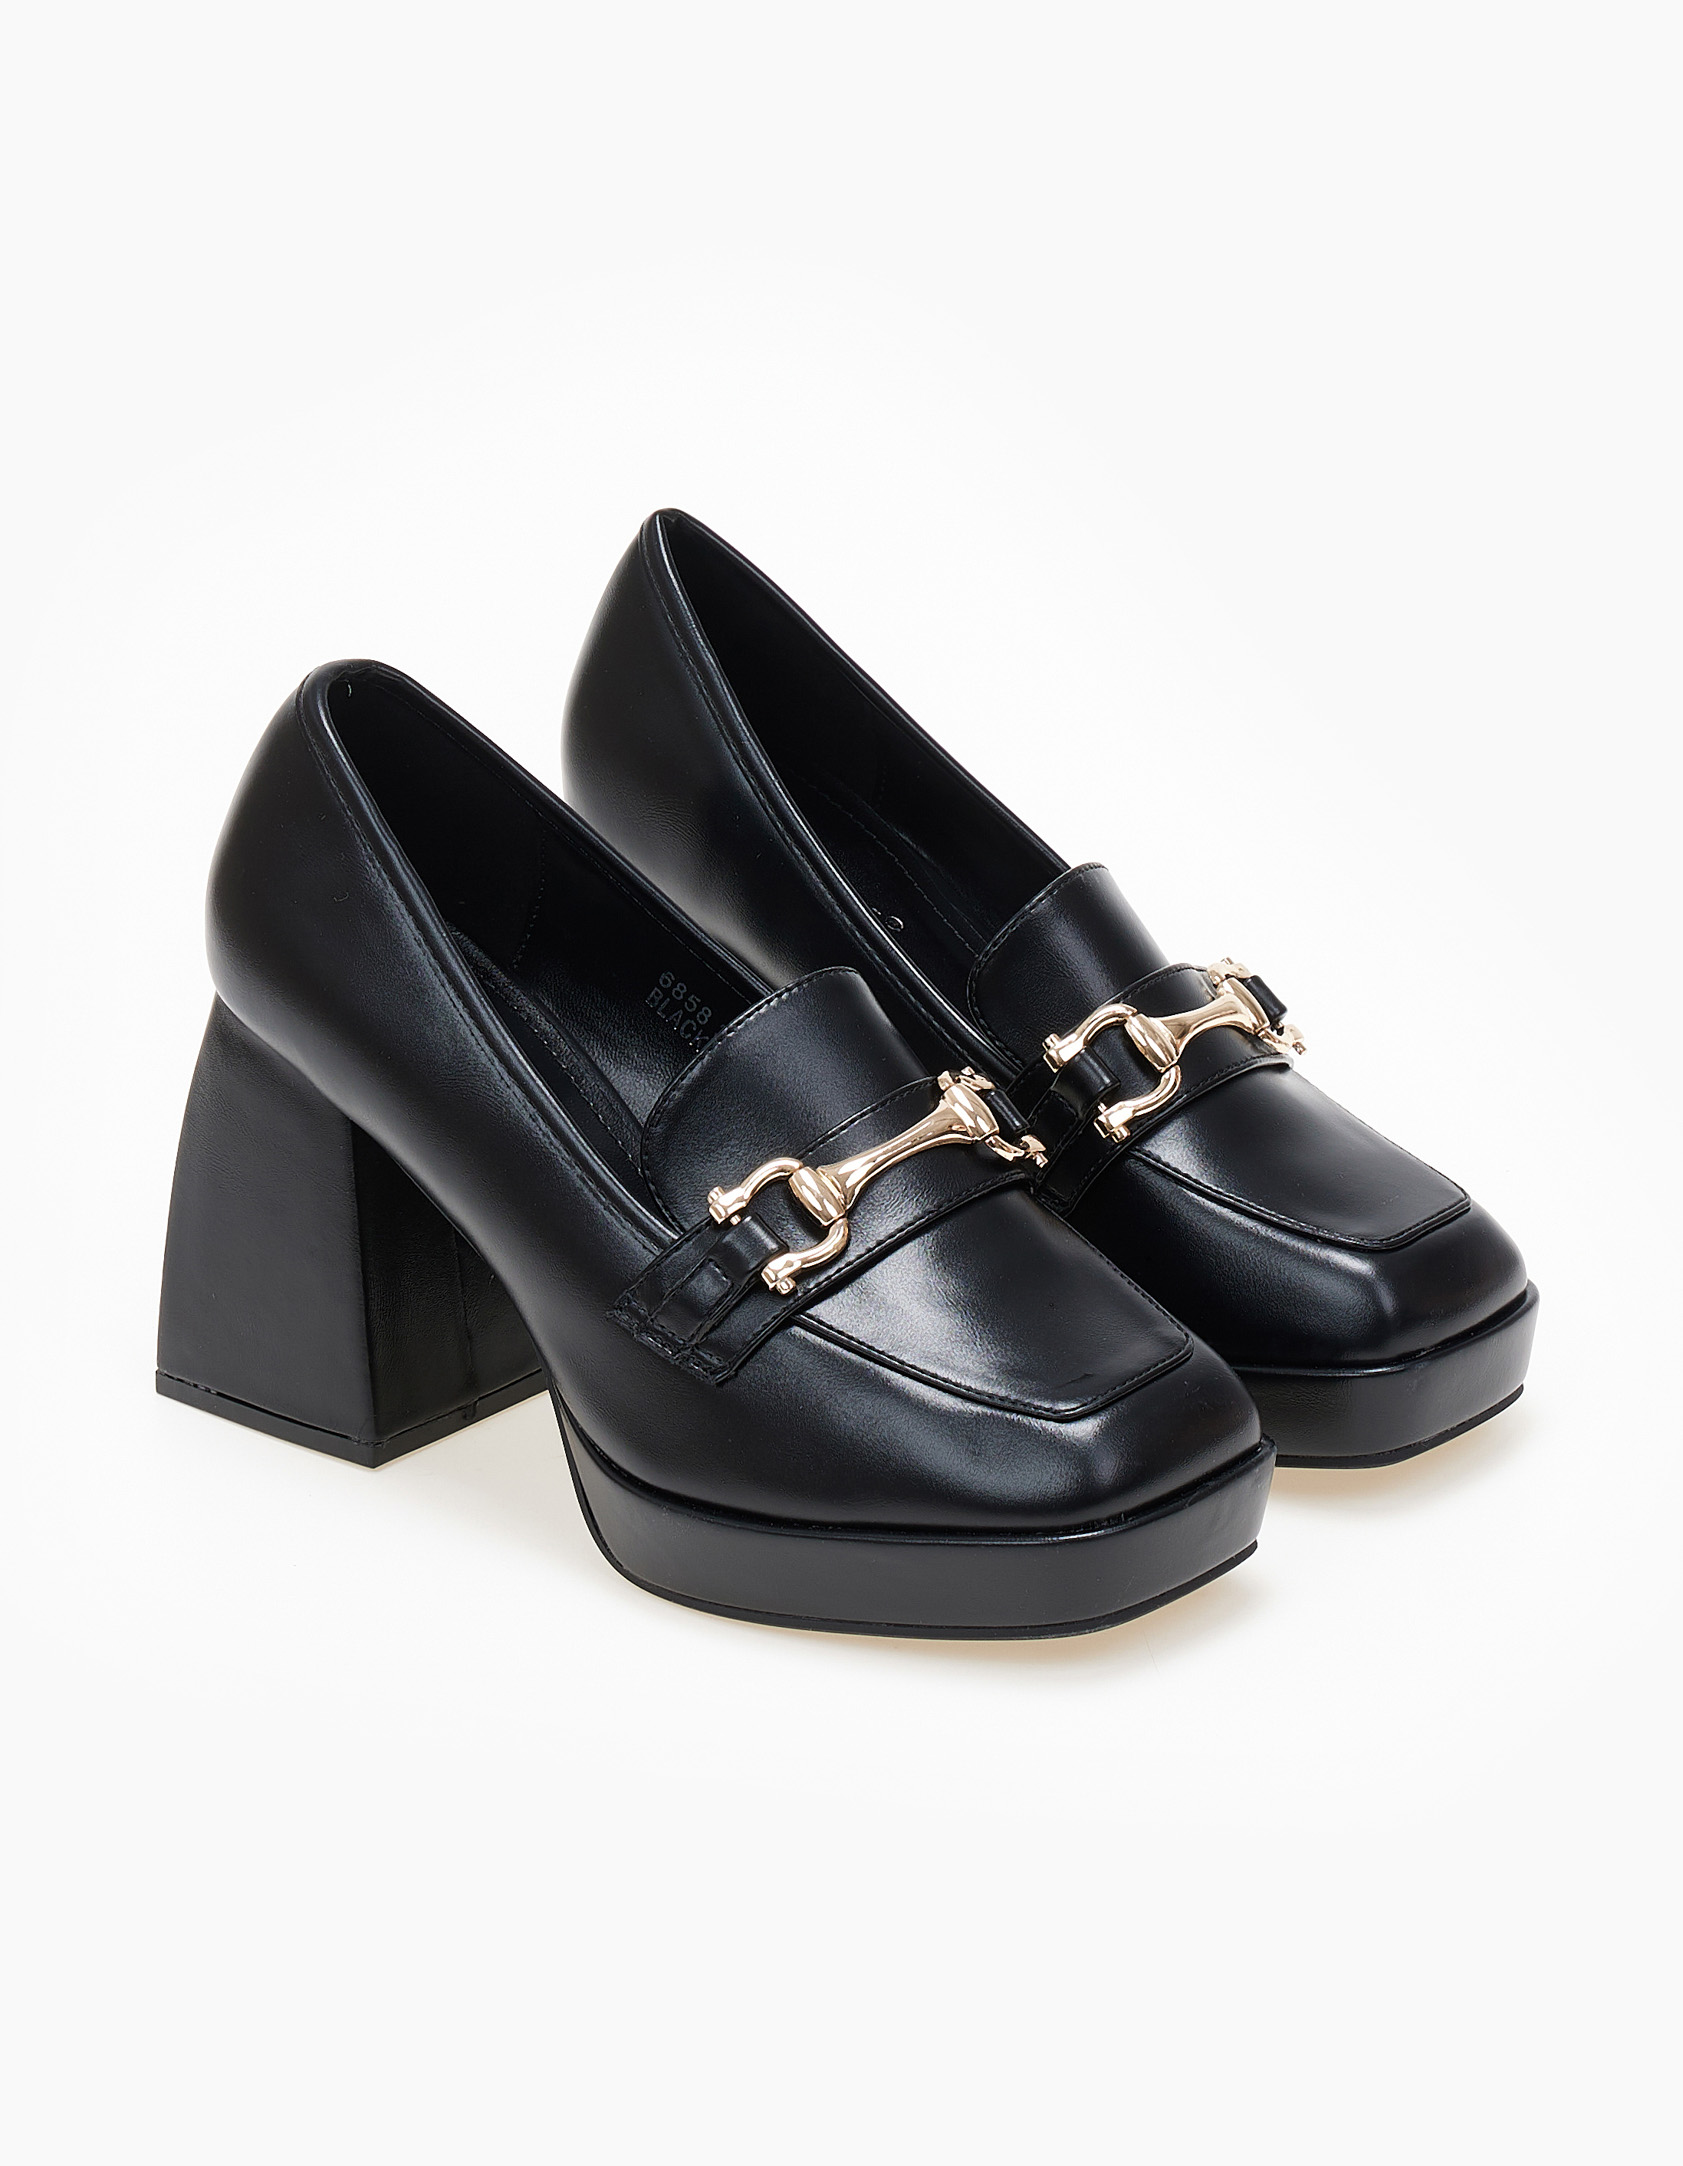 Παπούτσια > Γόβες Loafers γόβες με μεταλλική λεπτομέρεια και χοντρό τακούνι - Μαύρο